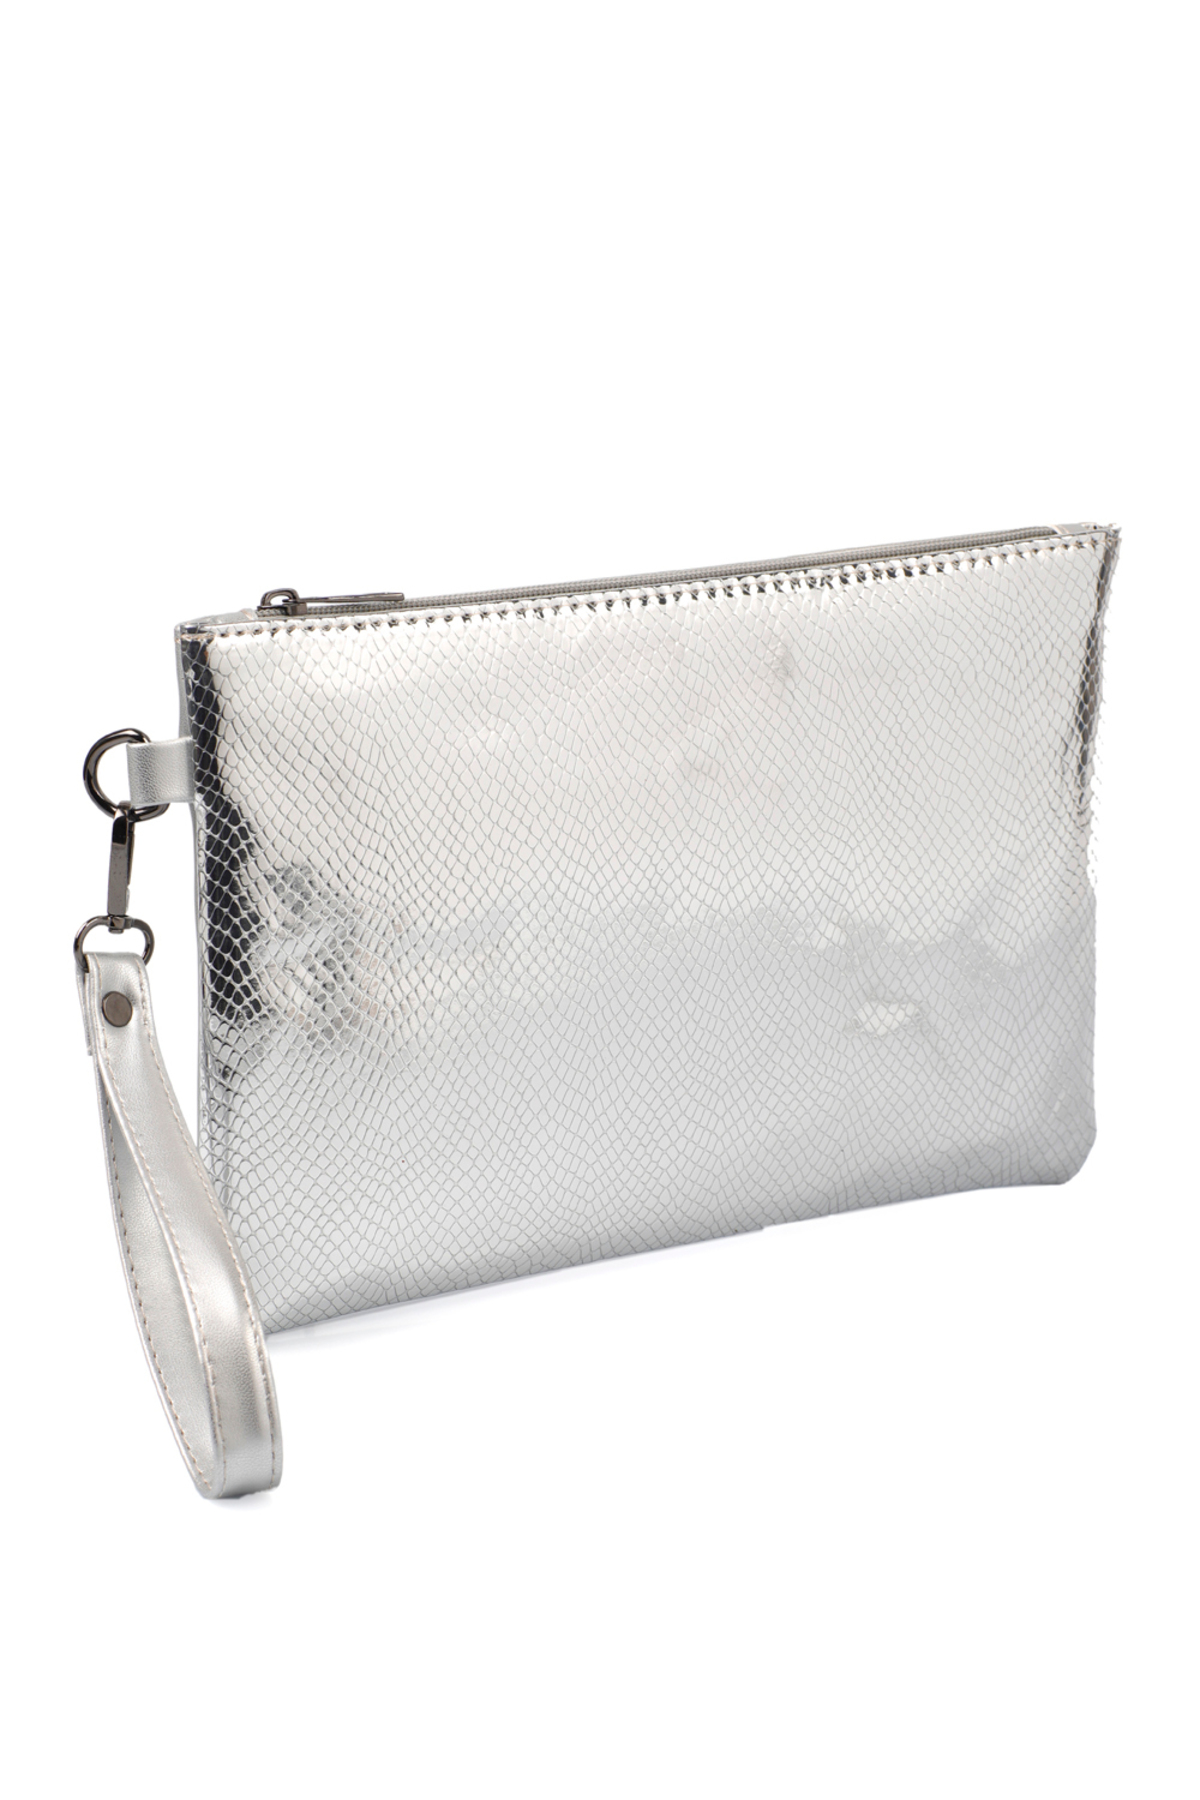 Capone Outfitters Paris Women's Clutch Portfolio Silver Bag